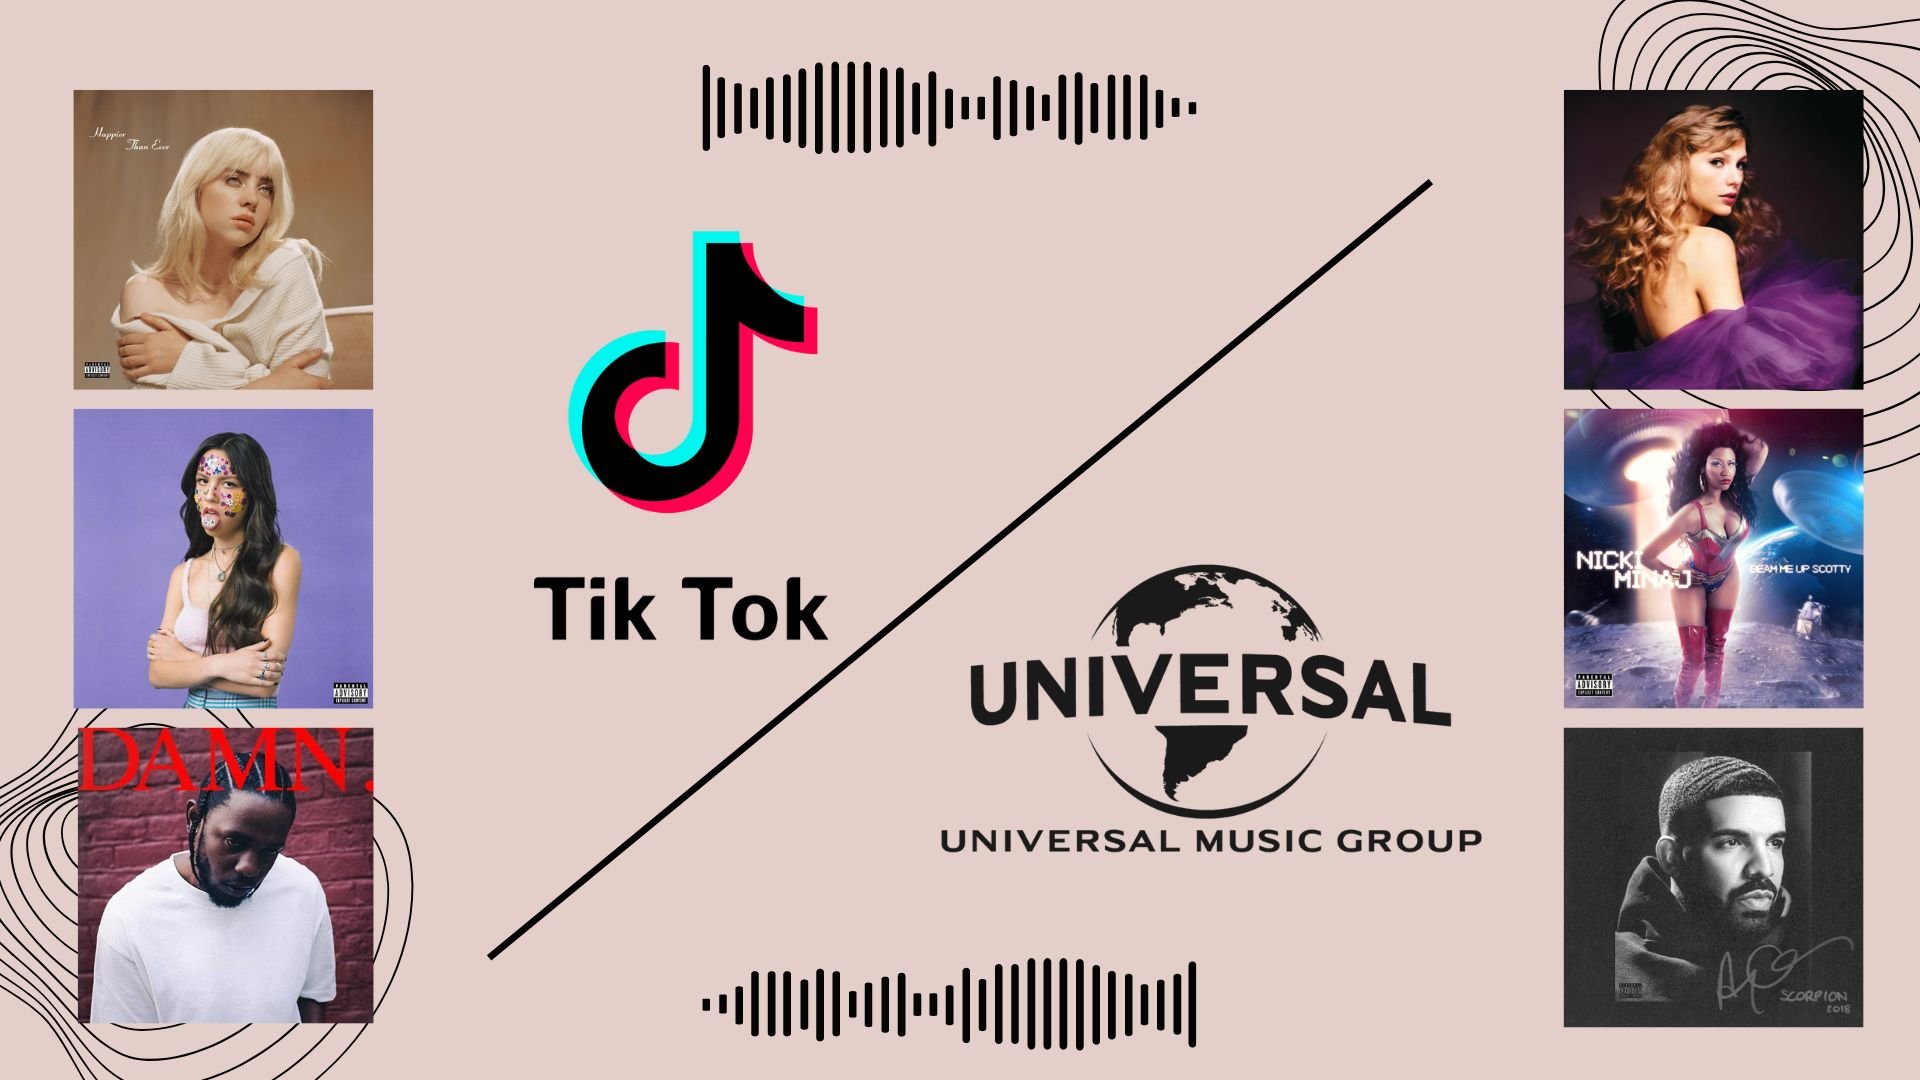 tiktok and universal music group